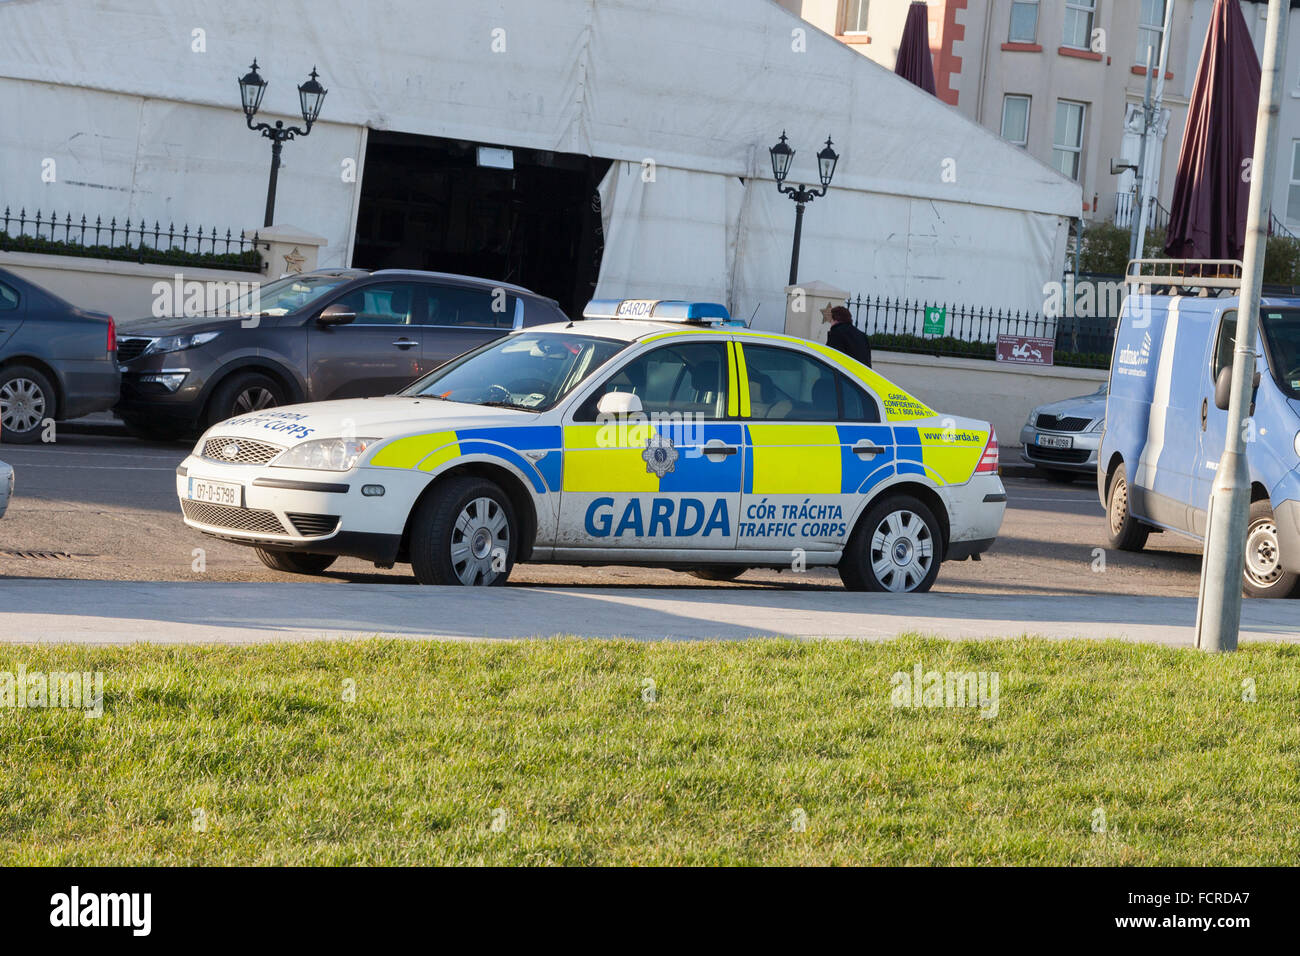 Garda car, traffic Stock Photo